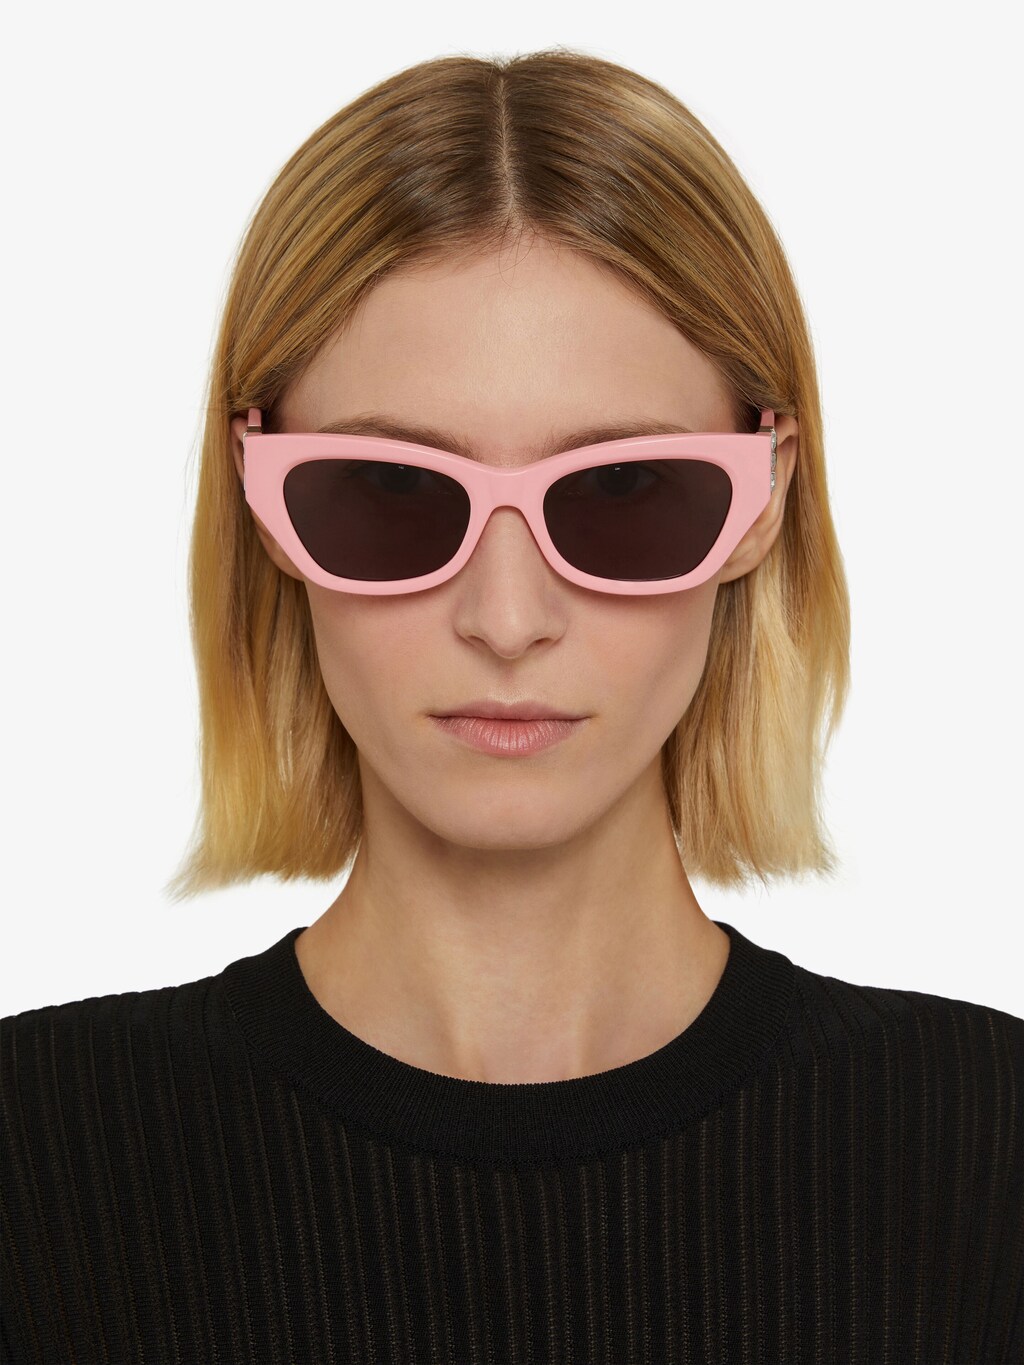 Sunglasses | Women Accessories | GIVENCHY Paris